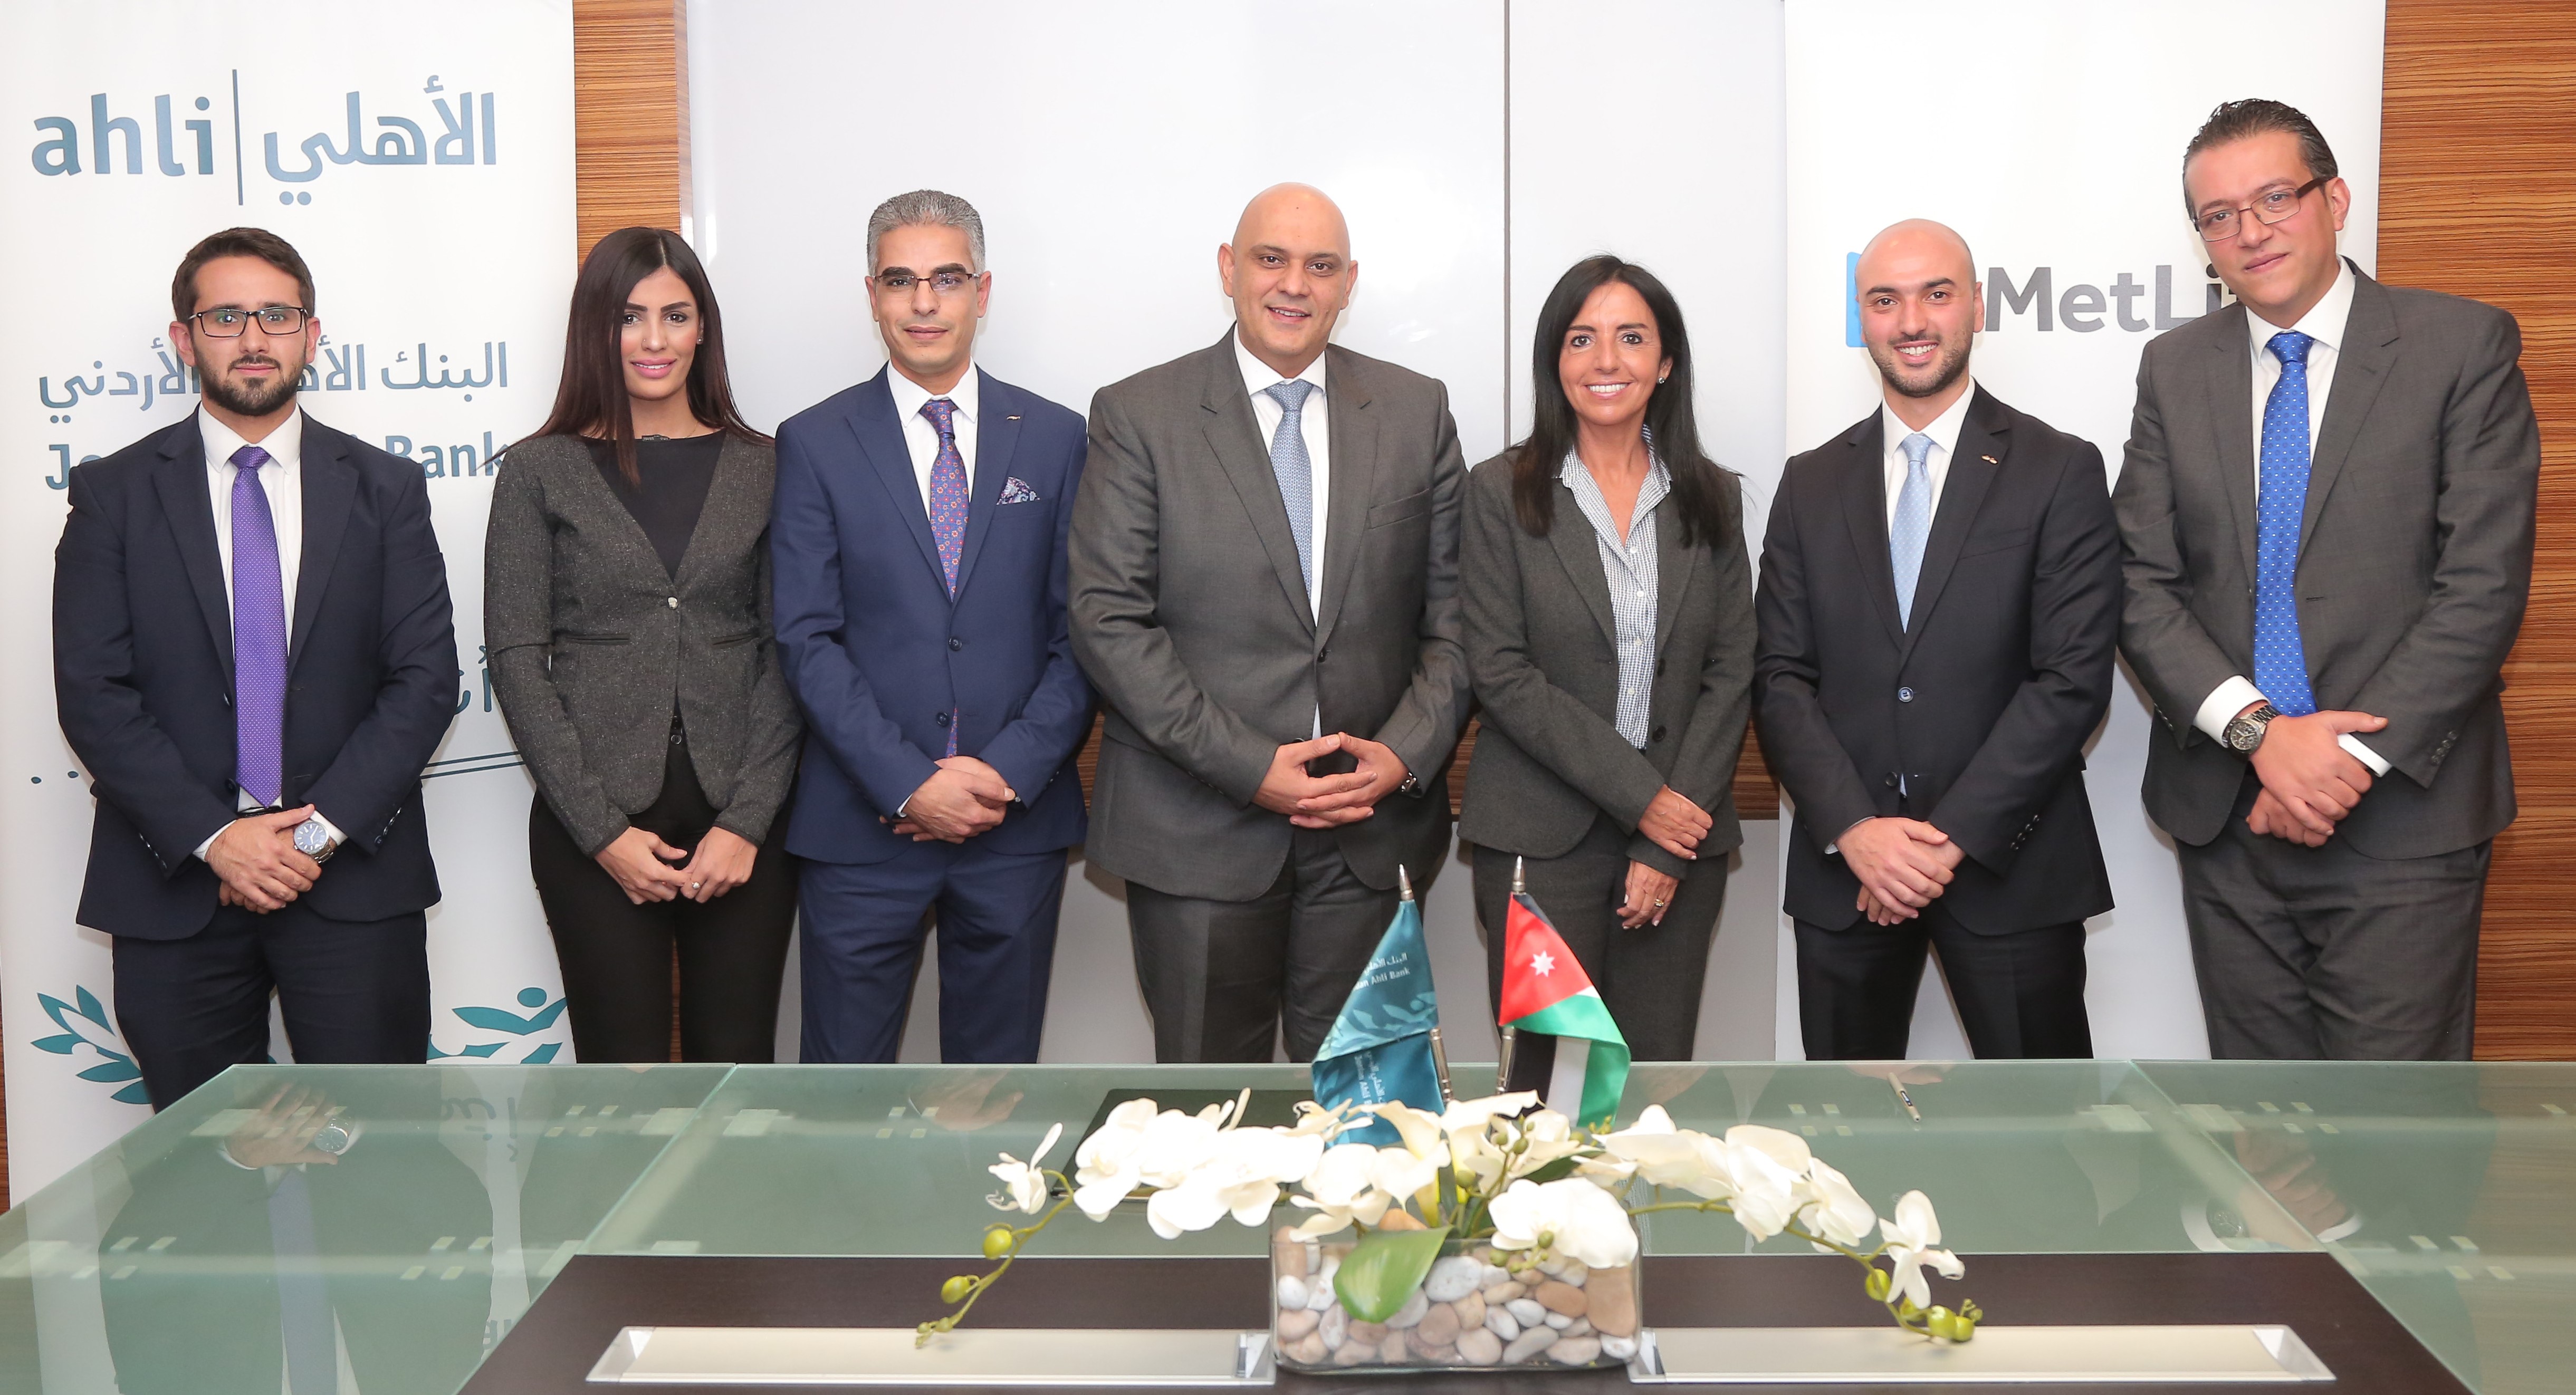 البنك الأهلي الأردني يوقع اتفاقية التأمين المصرفي مع شركة "ميتلايف"